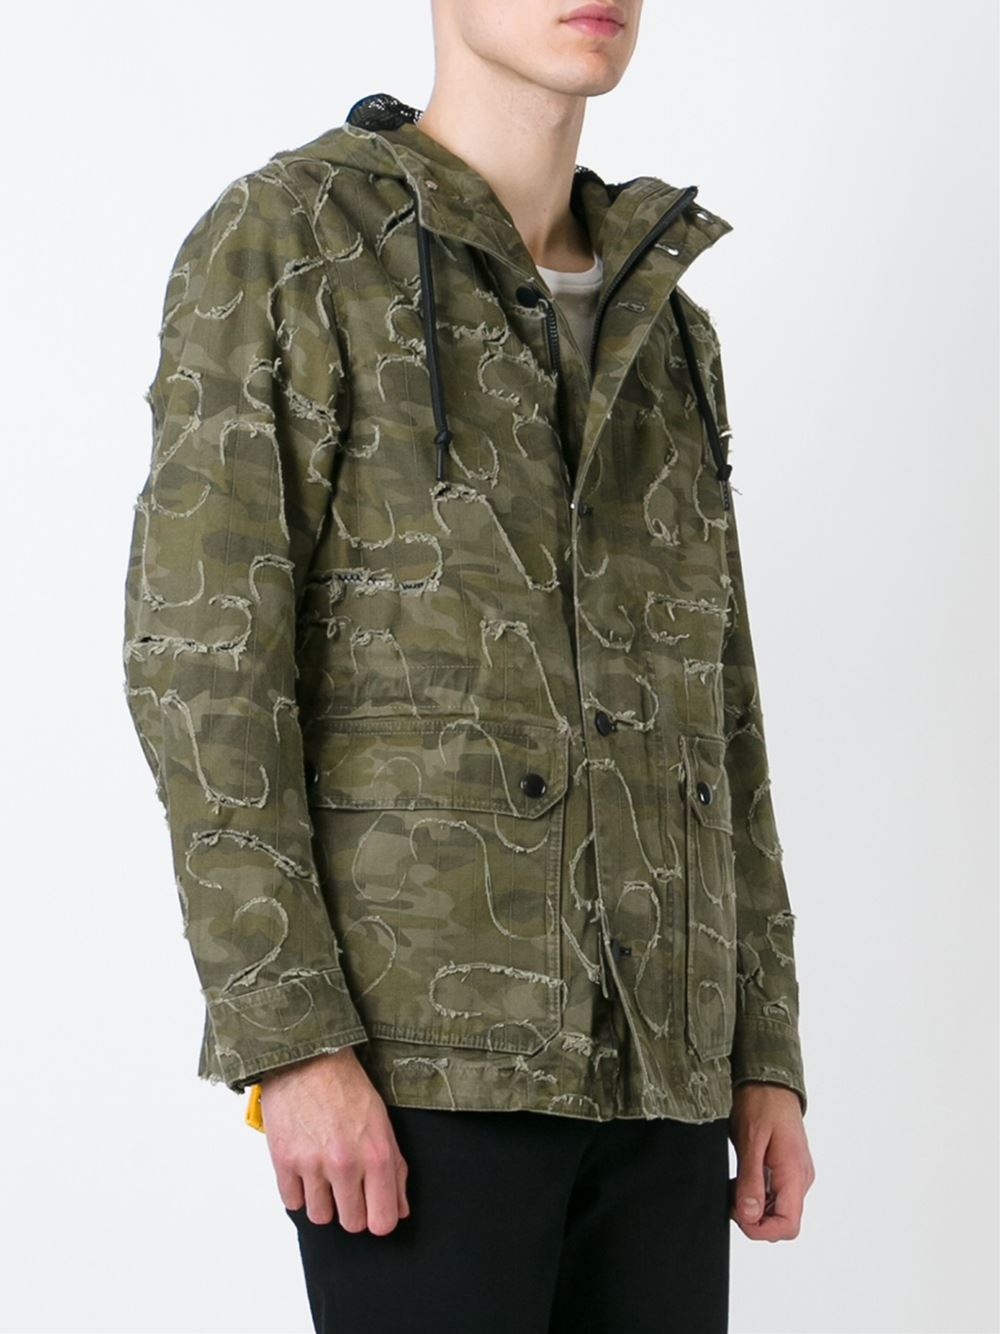 Lyst - Diesel Camouflage Print Jacket in Brown for Men